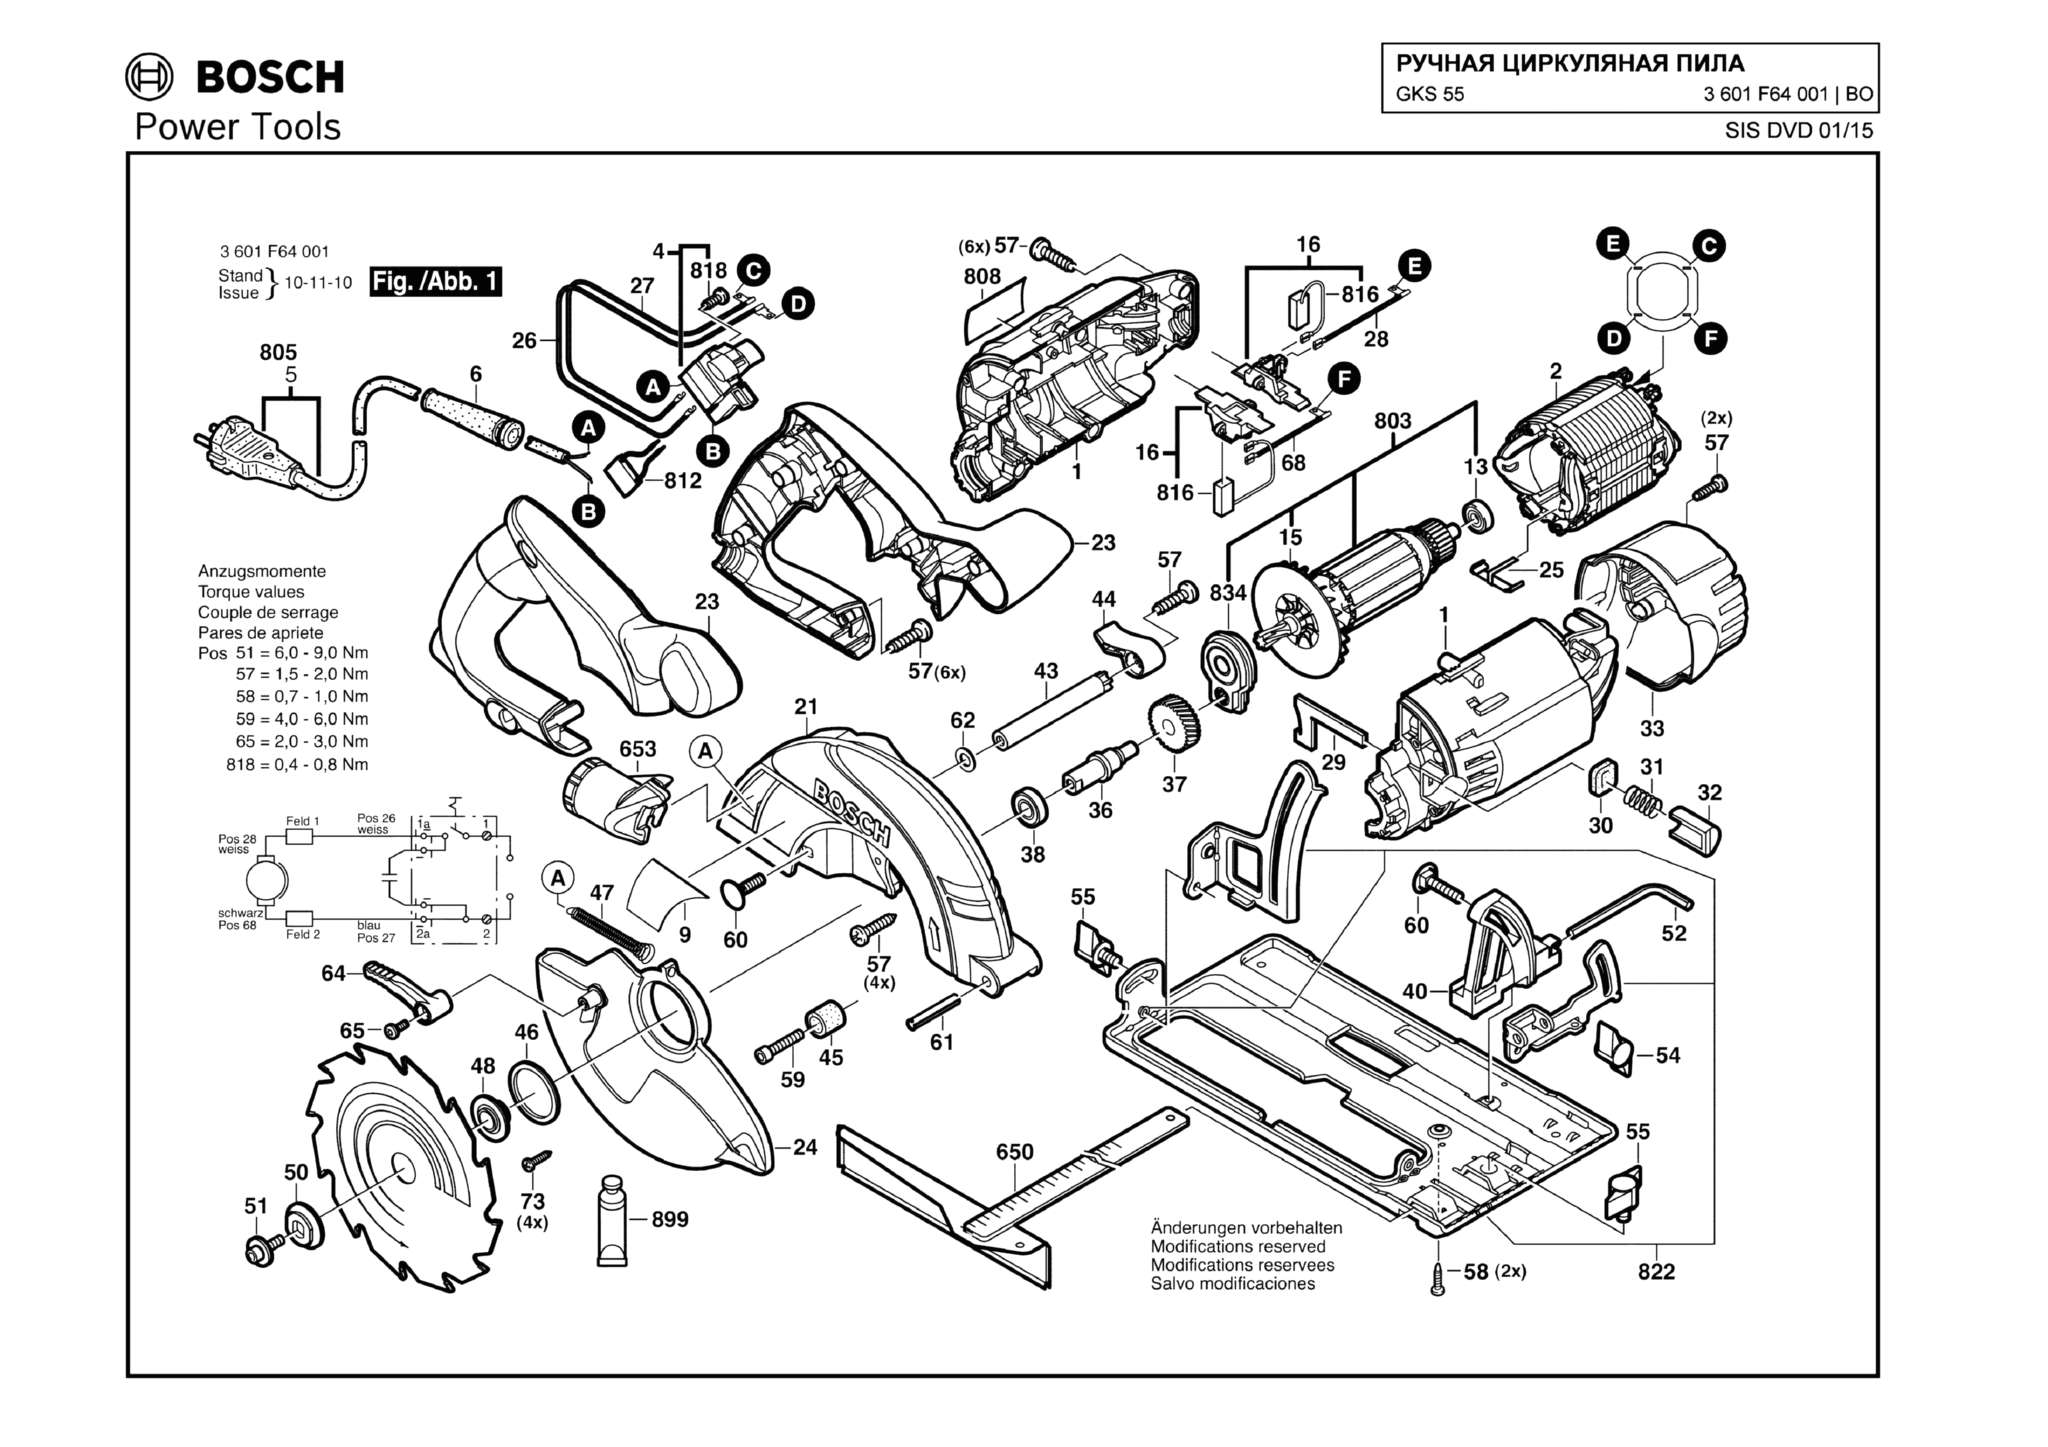 Запчасти, схема и деталировка Bosch GKS 55 (ТИП 3601F64001)